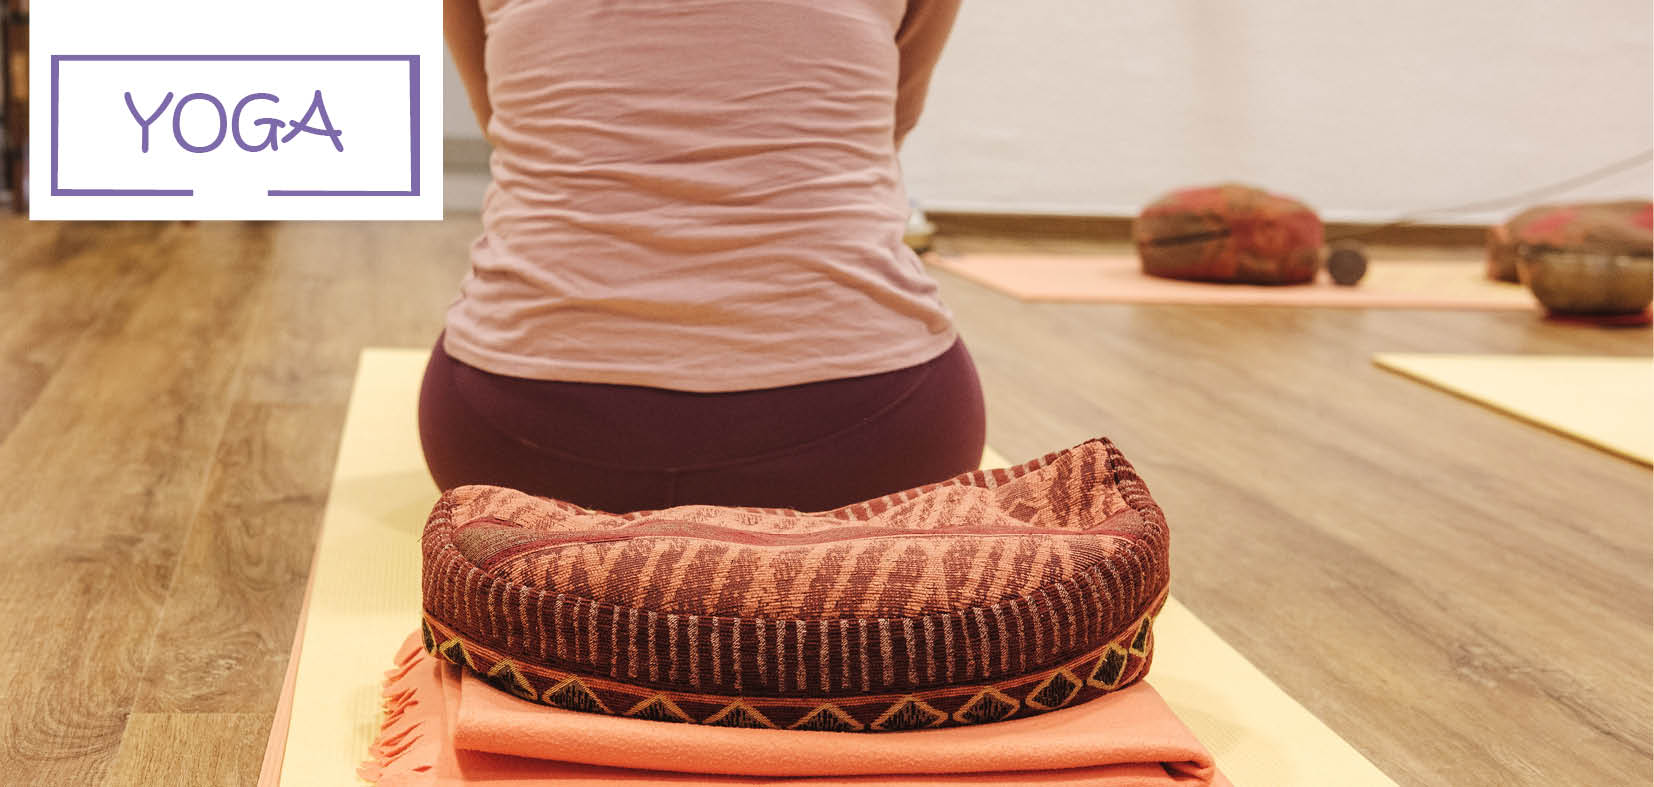 Der untere Rücken einer Frau von hinten, die auf Yogakissen sitzt, links oben der Text: YOGA